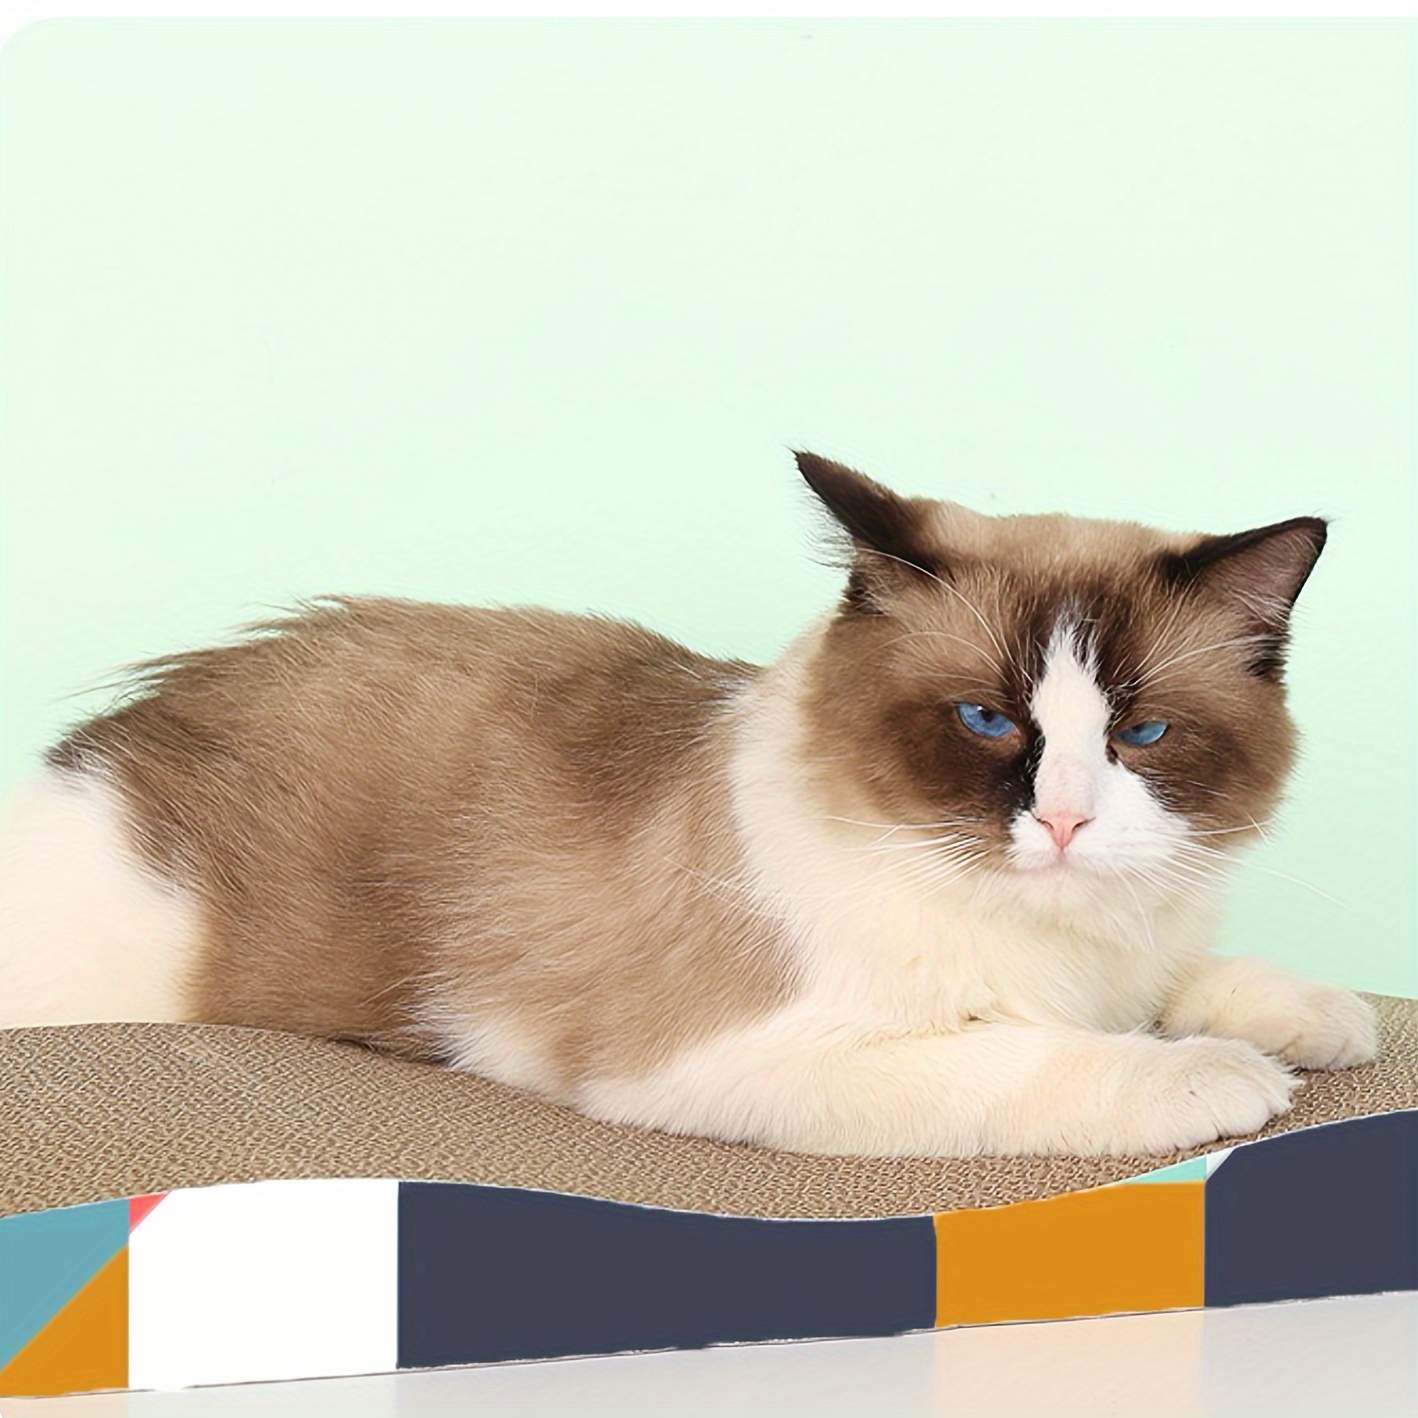 

Cat Scratcher Cardboard: Durable Cat Sofa For Indoor Cats - Scratching Board, Pet Bed, Sleeping Area